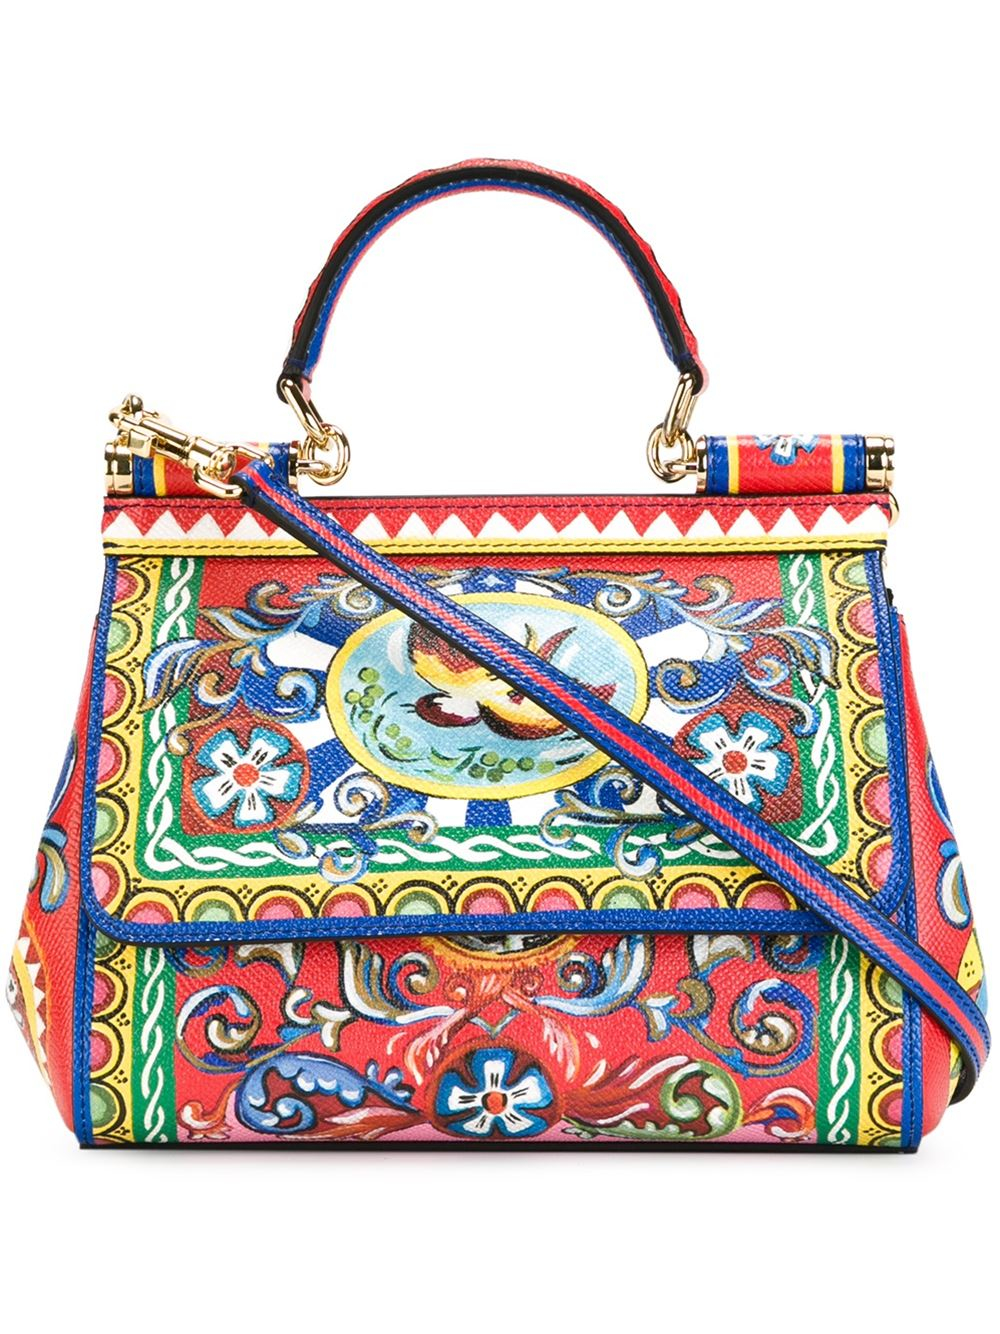 Dolce & Gabbana Carretti Print Miss Sicily Small Handbag - Lyst